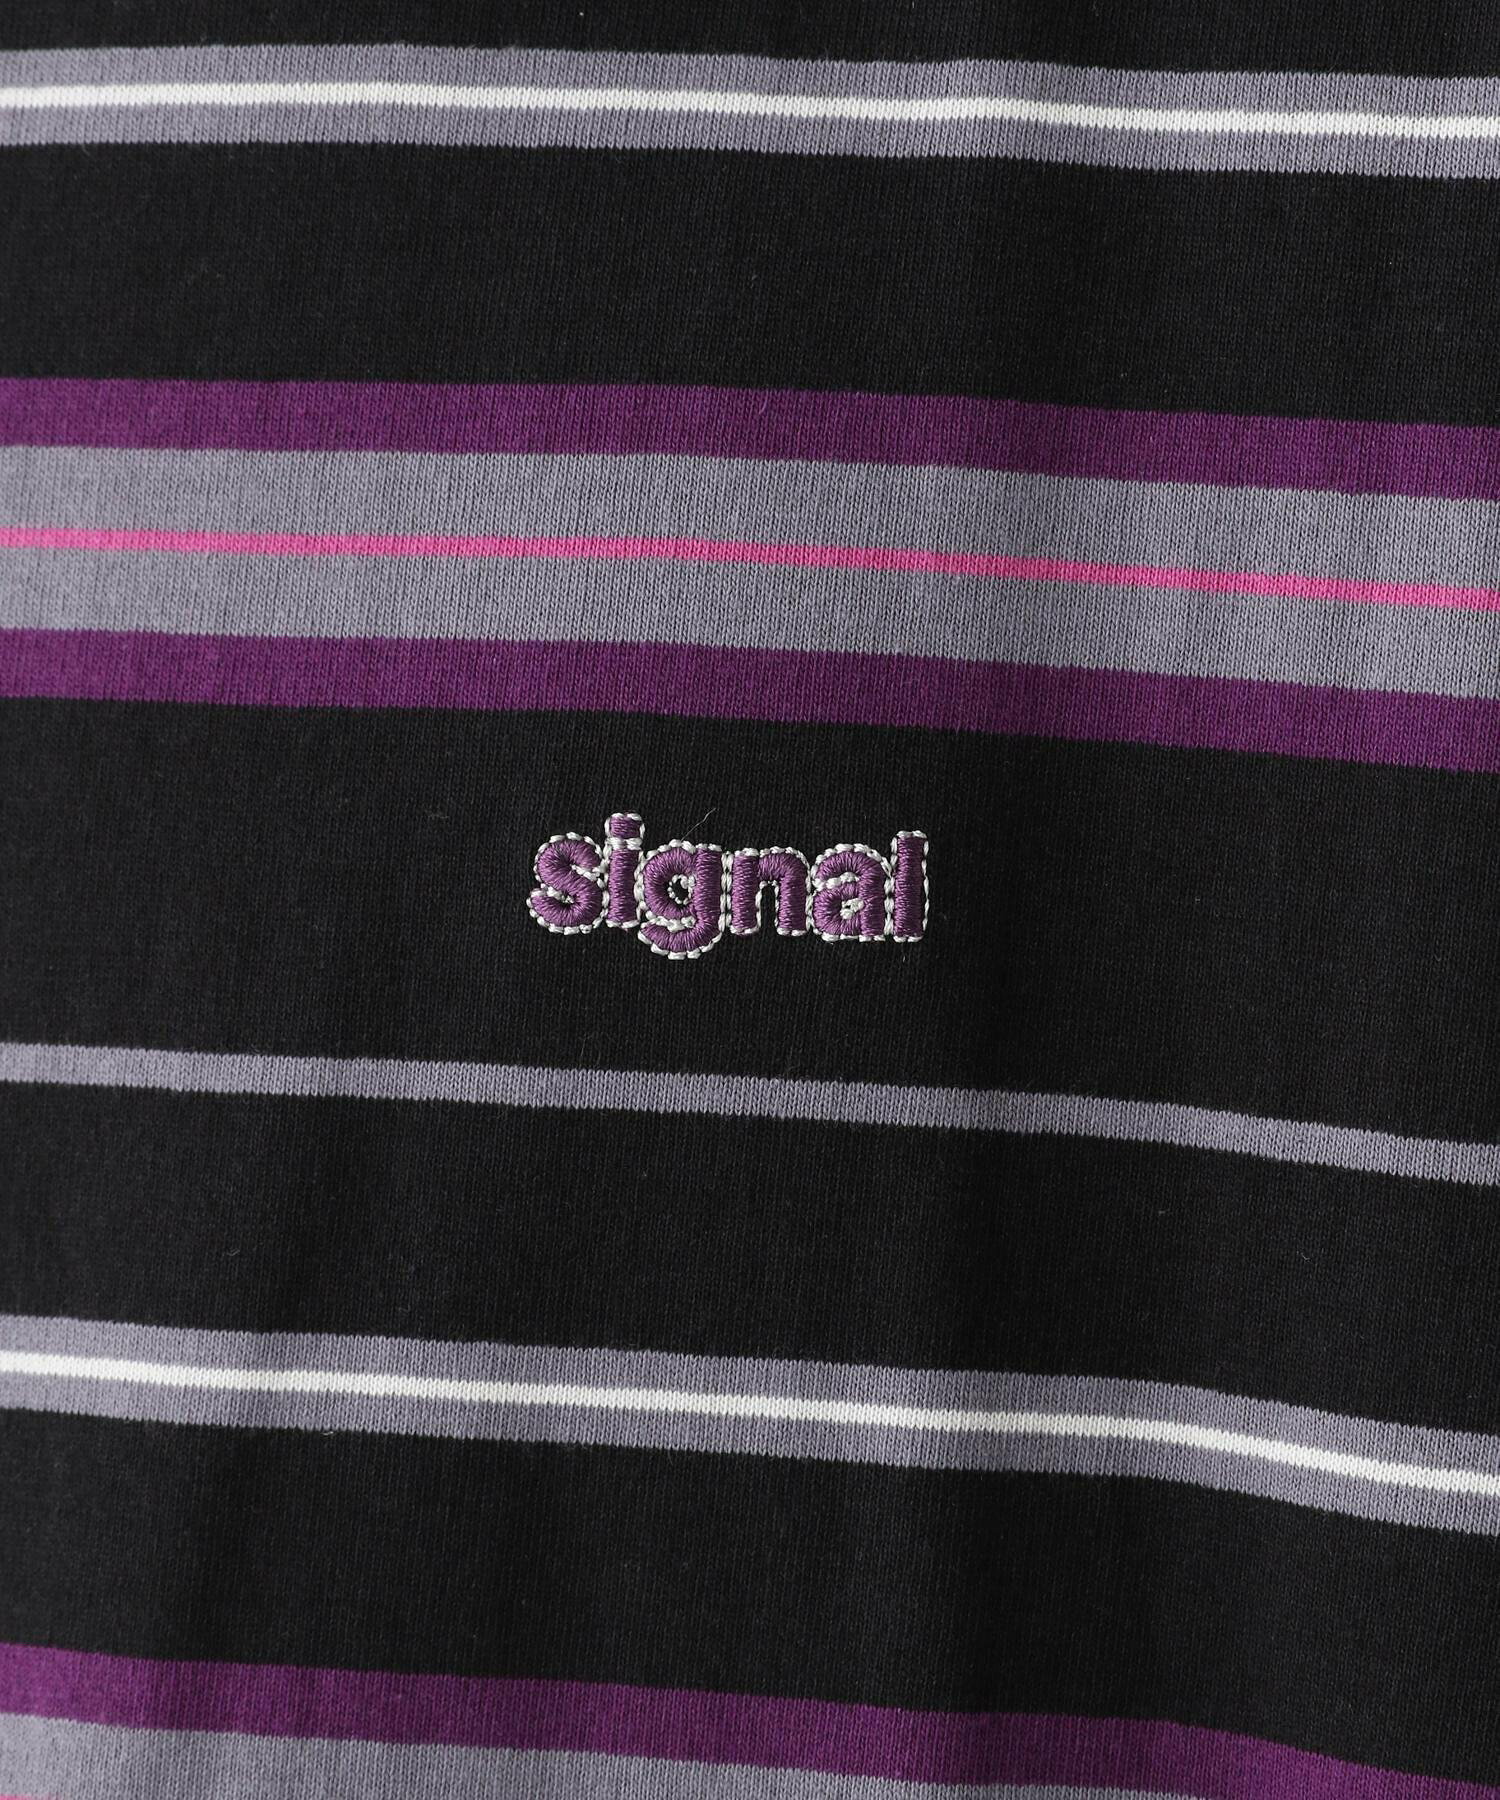 【SIGNAL SPORTS】ワンポイント刺繍/ボーダークルーネックオーバーTシャツ